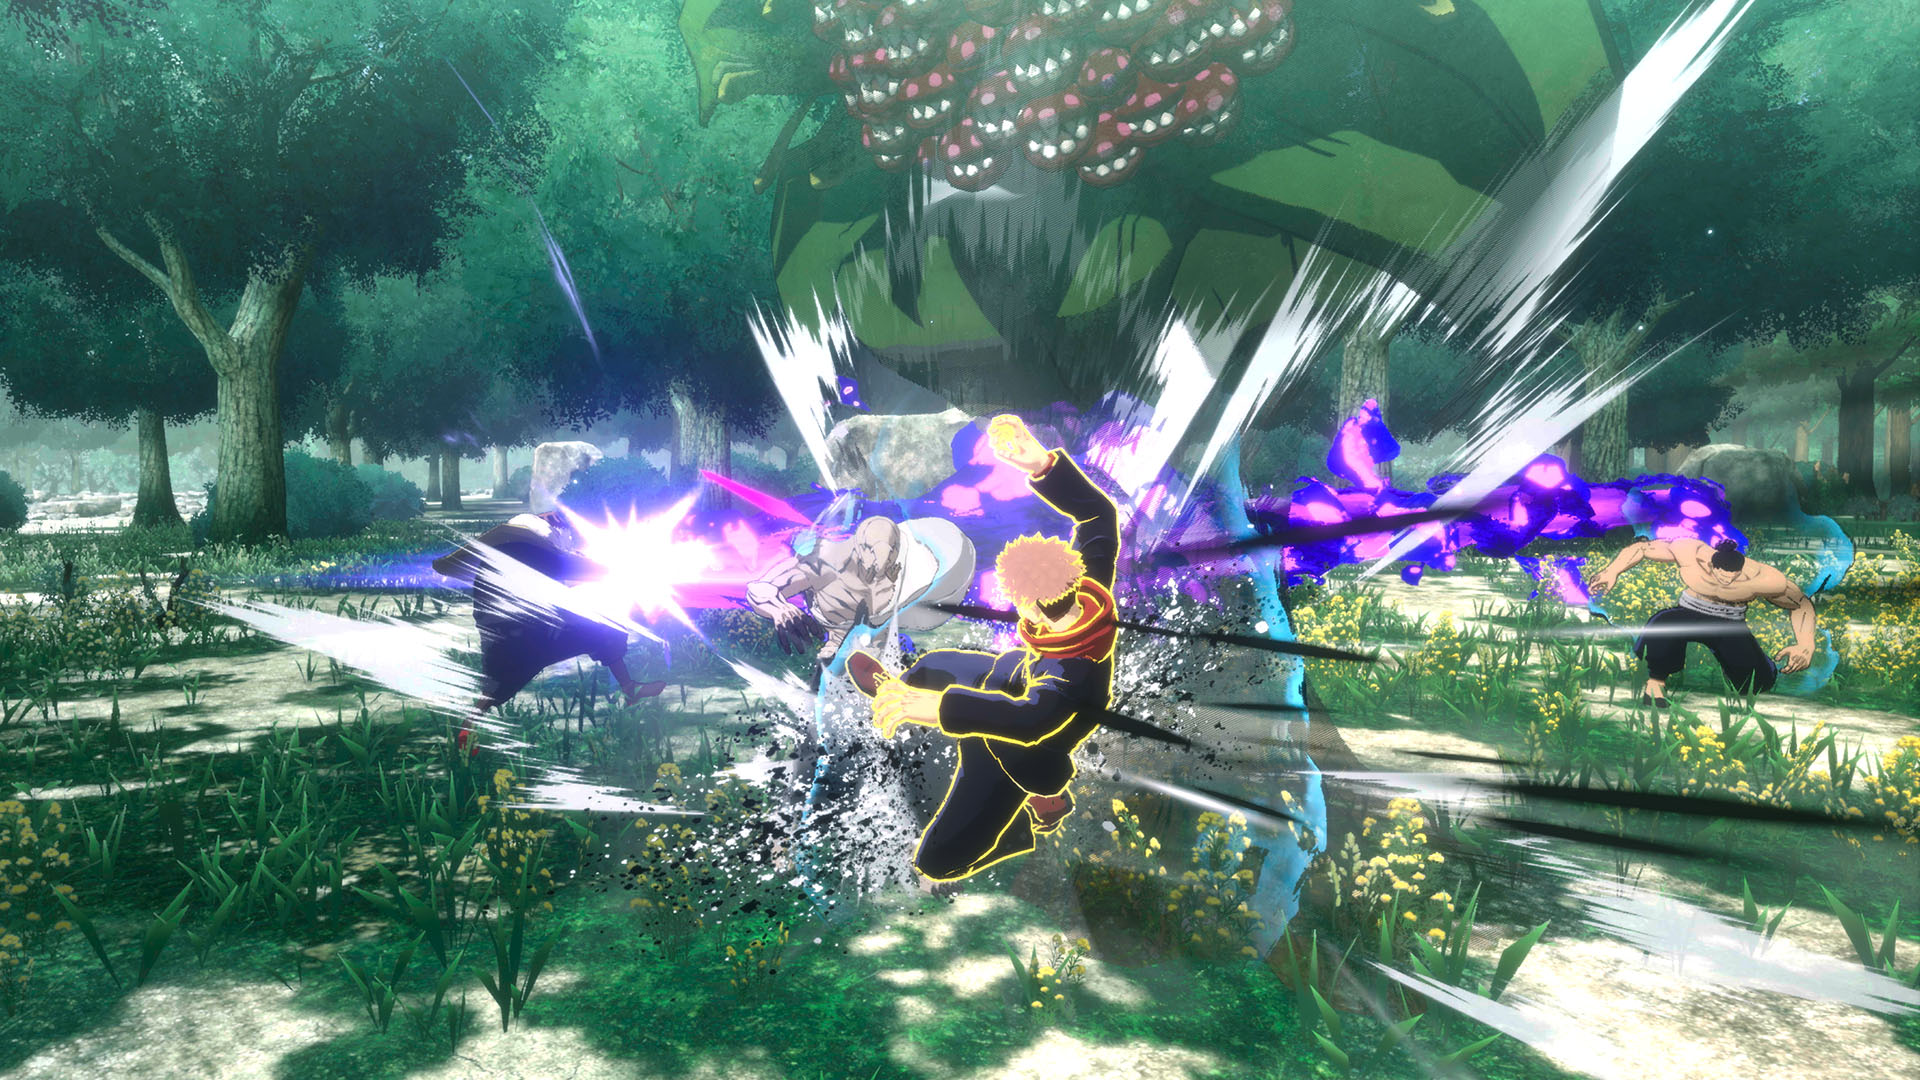 Jujutsu Kaisen Cursed Clash (Multi), jogo de luta 3D baseado na série de  mangá e anime, é revelado pela Bandai Namco - GameBlast